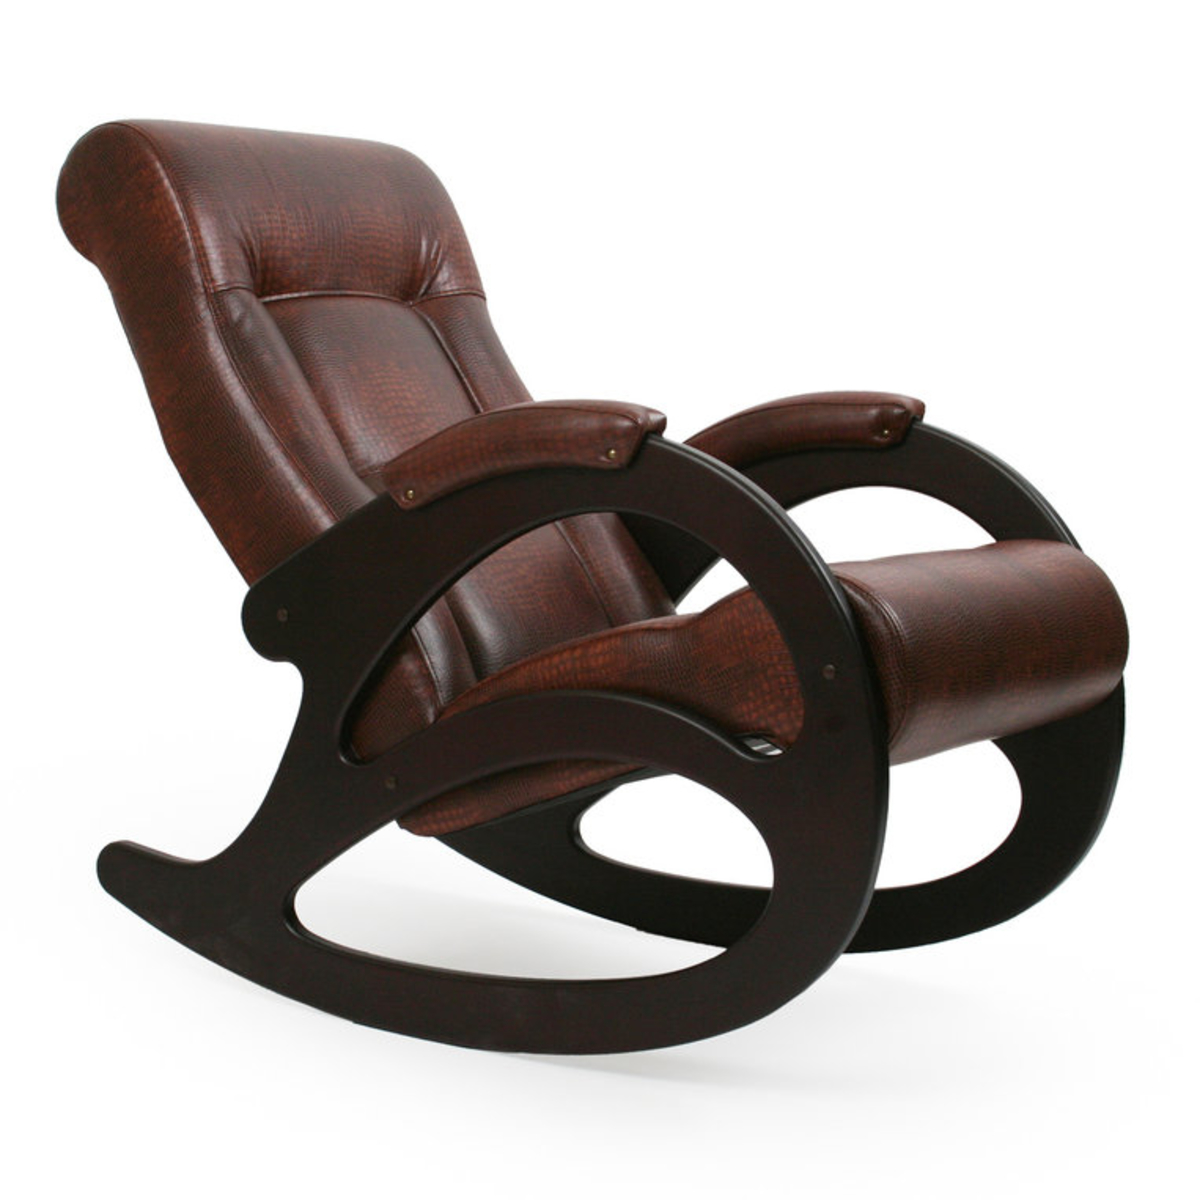 Кресло качалка купить от производителя. Кресло-качалка комфорт модель 77. Кресло-качалка модель 44 б/л. Кресло качалка Dondolo. Кресло-качалка, модель 4 б/л.